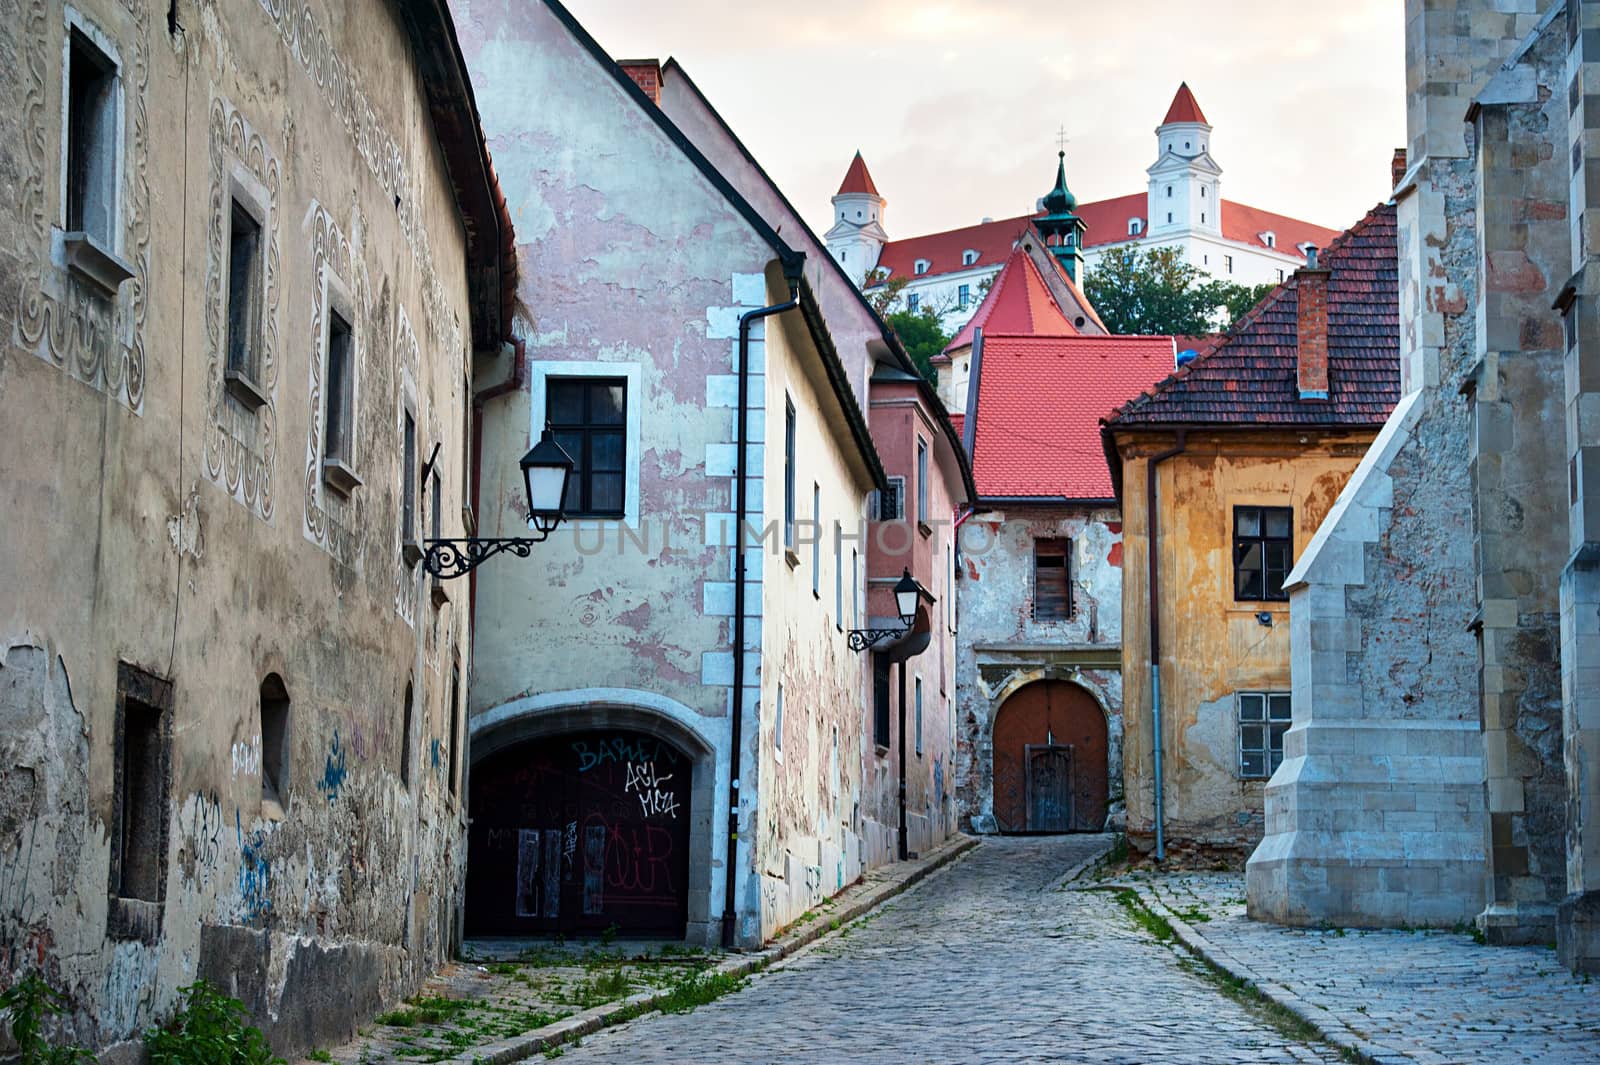 Bratislava old town by joyfull